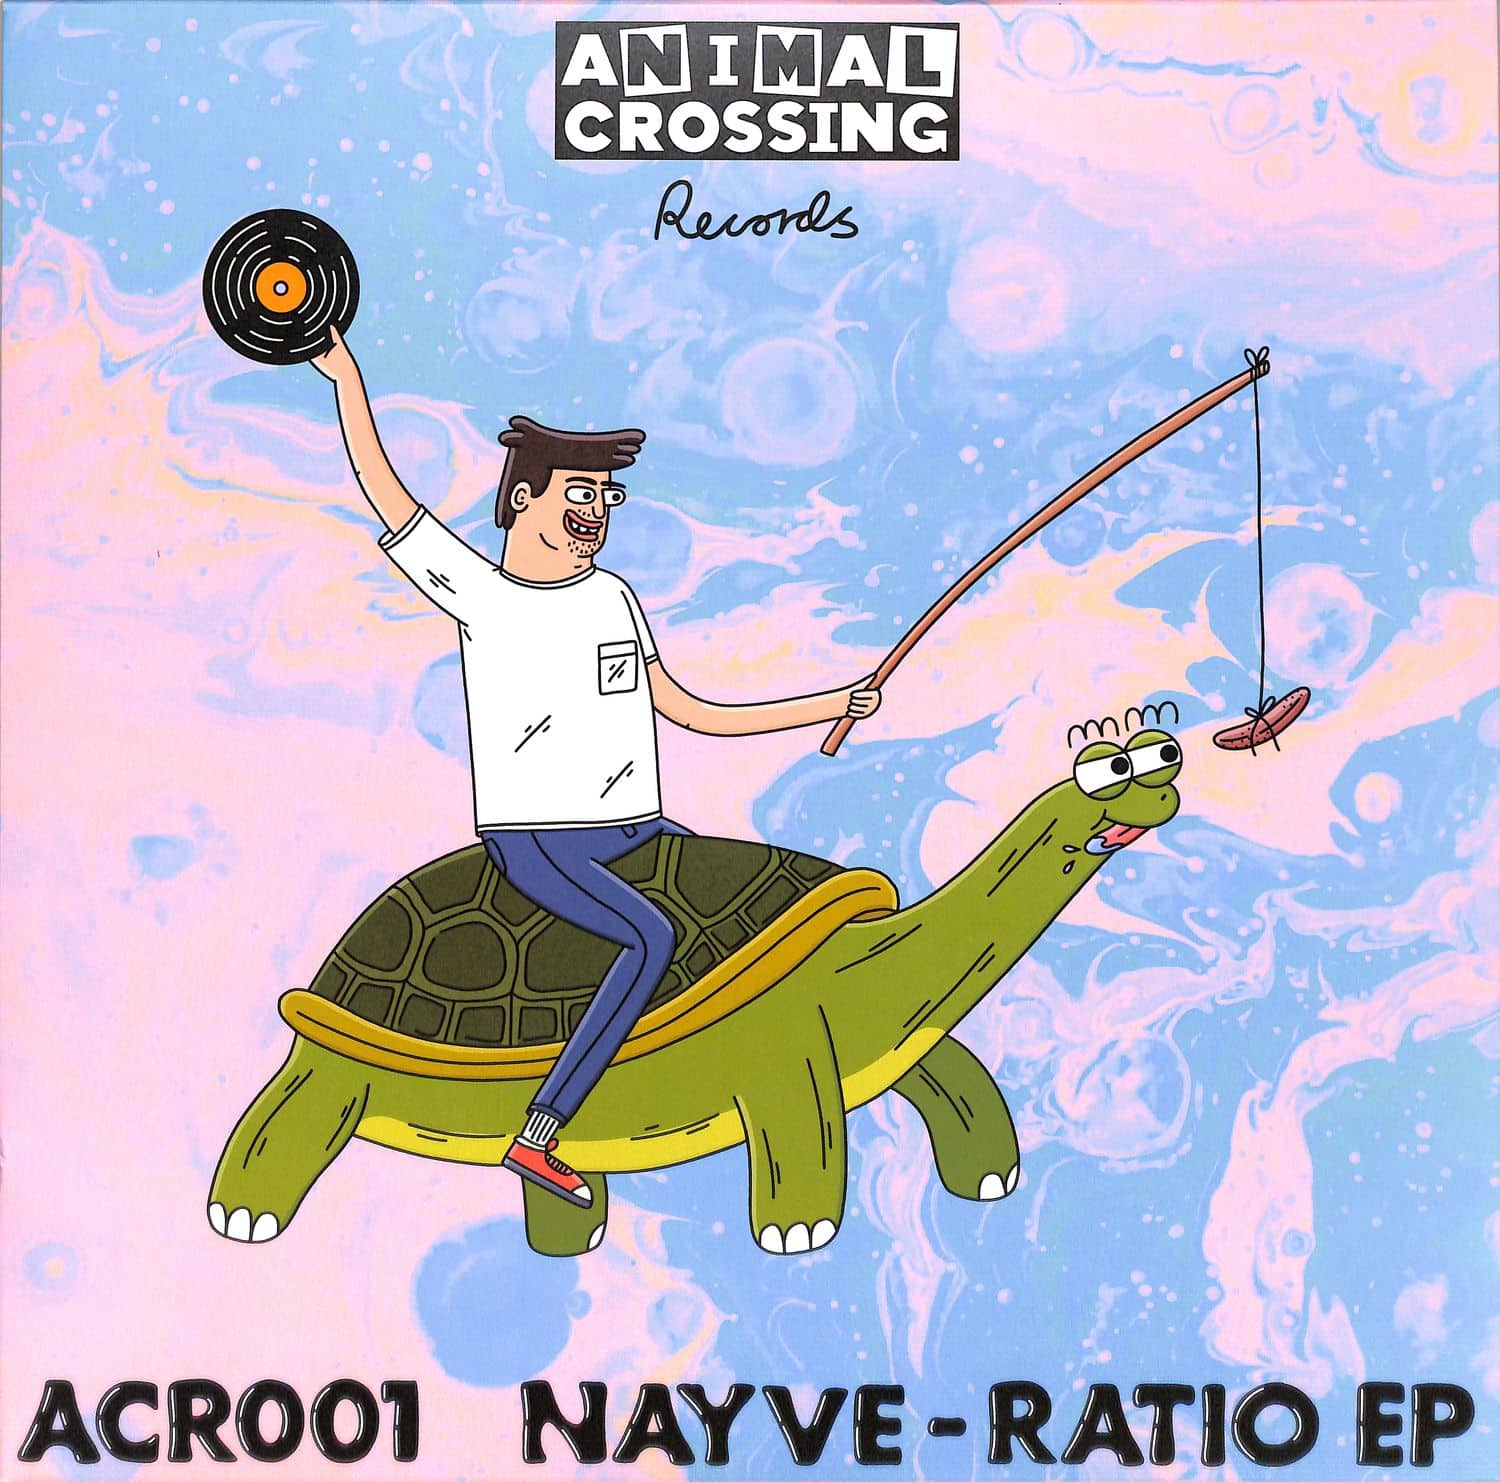 Nayve - RATIO EP 